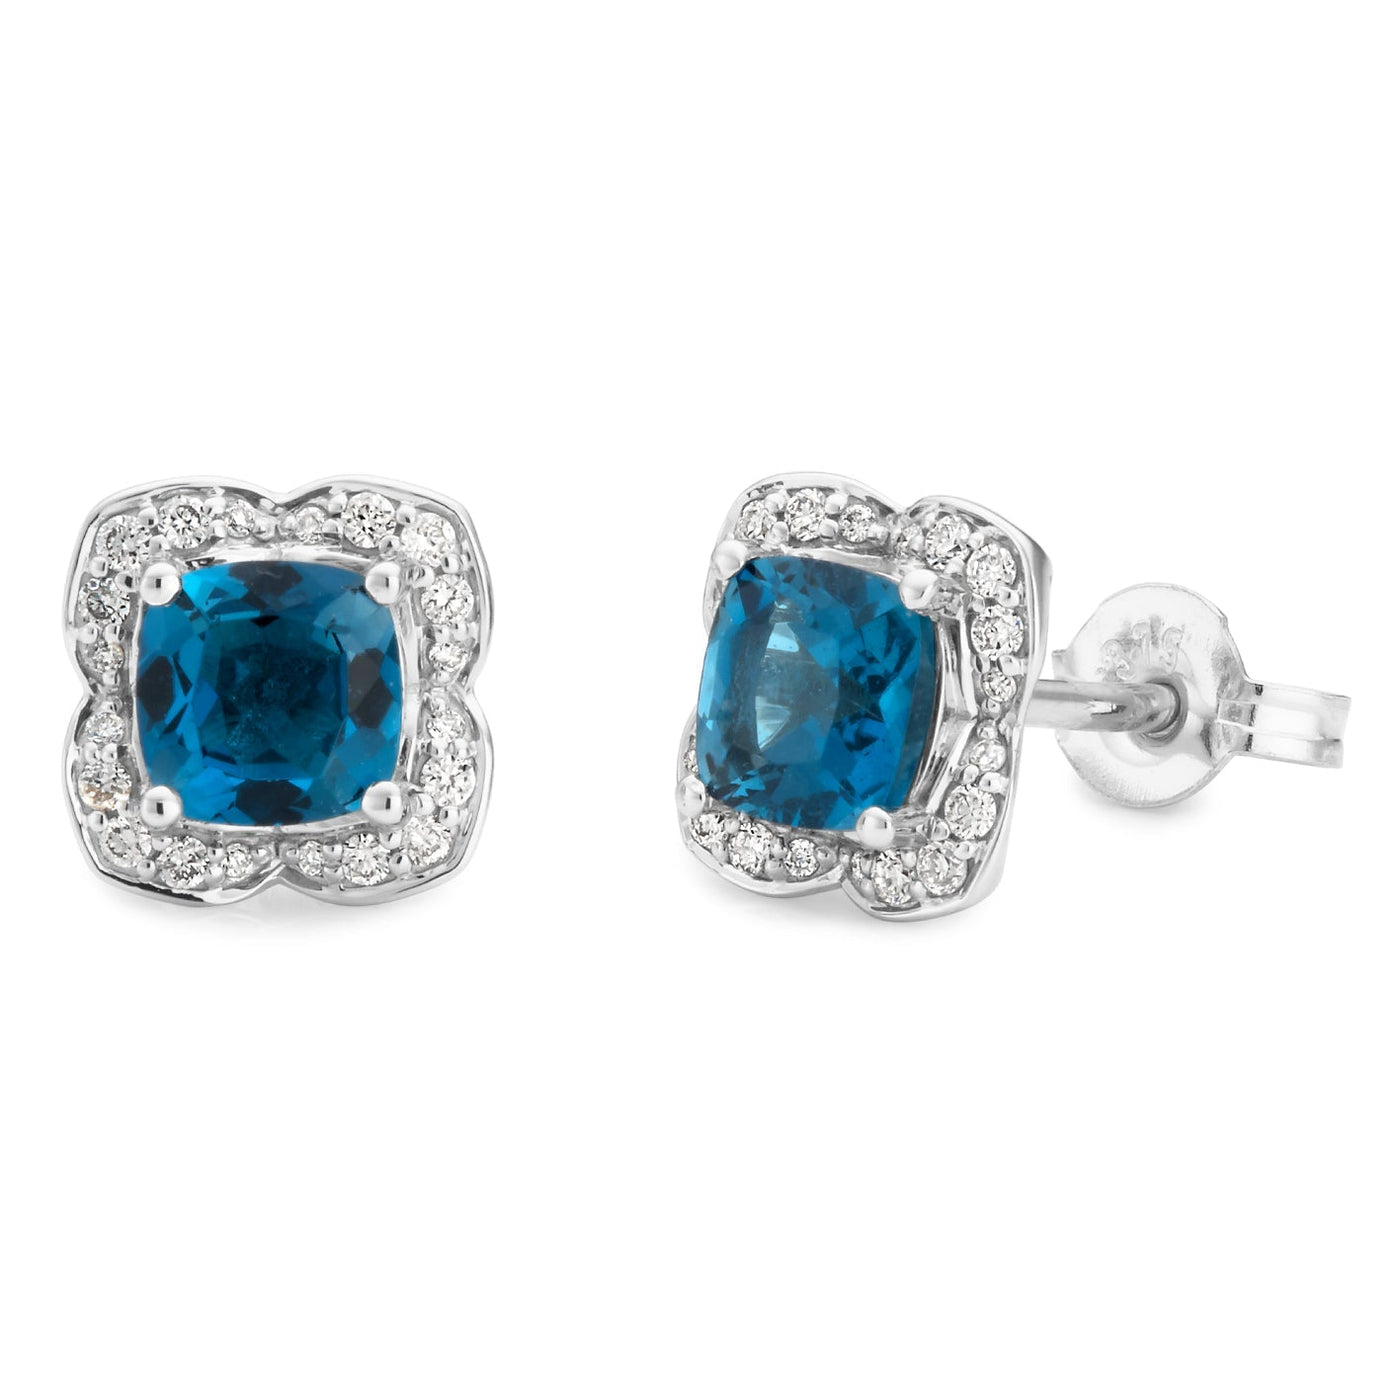 MMJ - London Blue Topaz & Diamond Earring